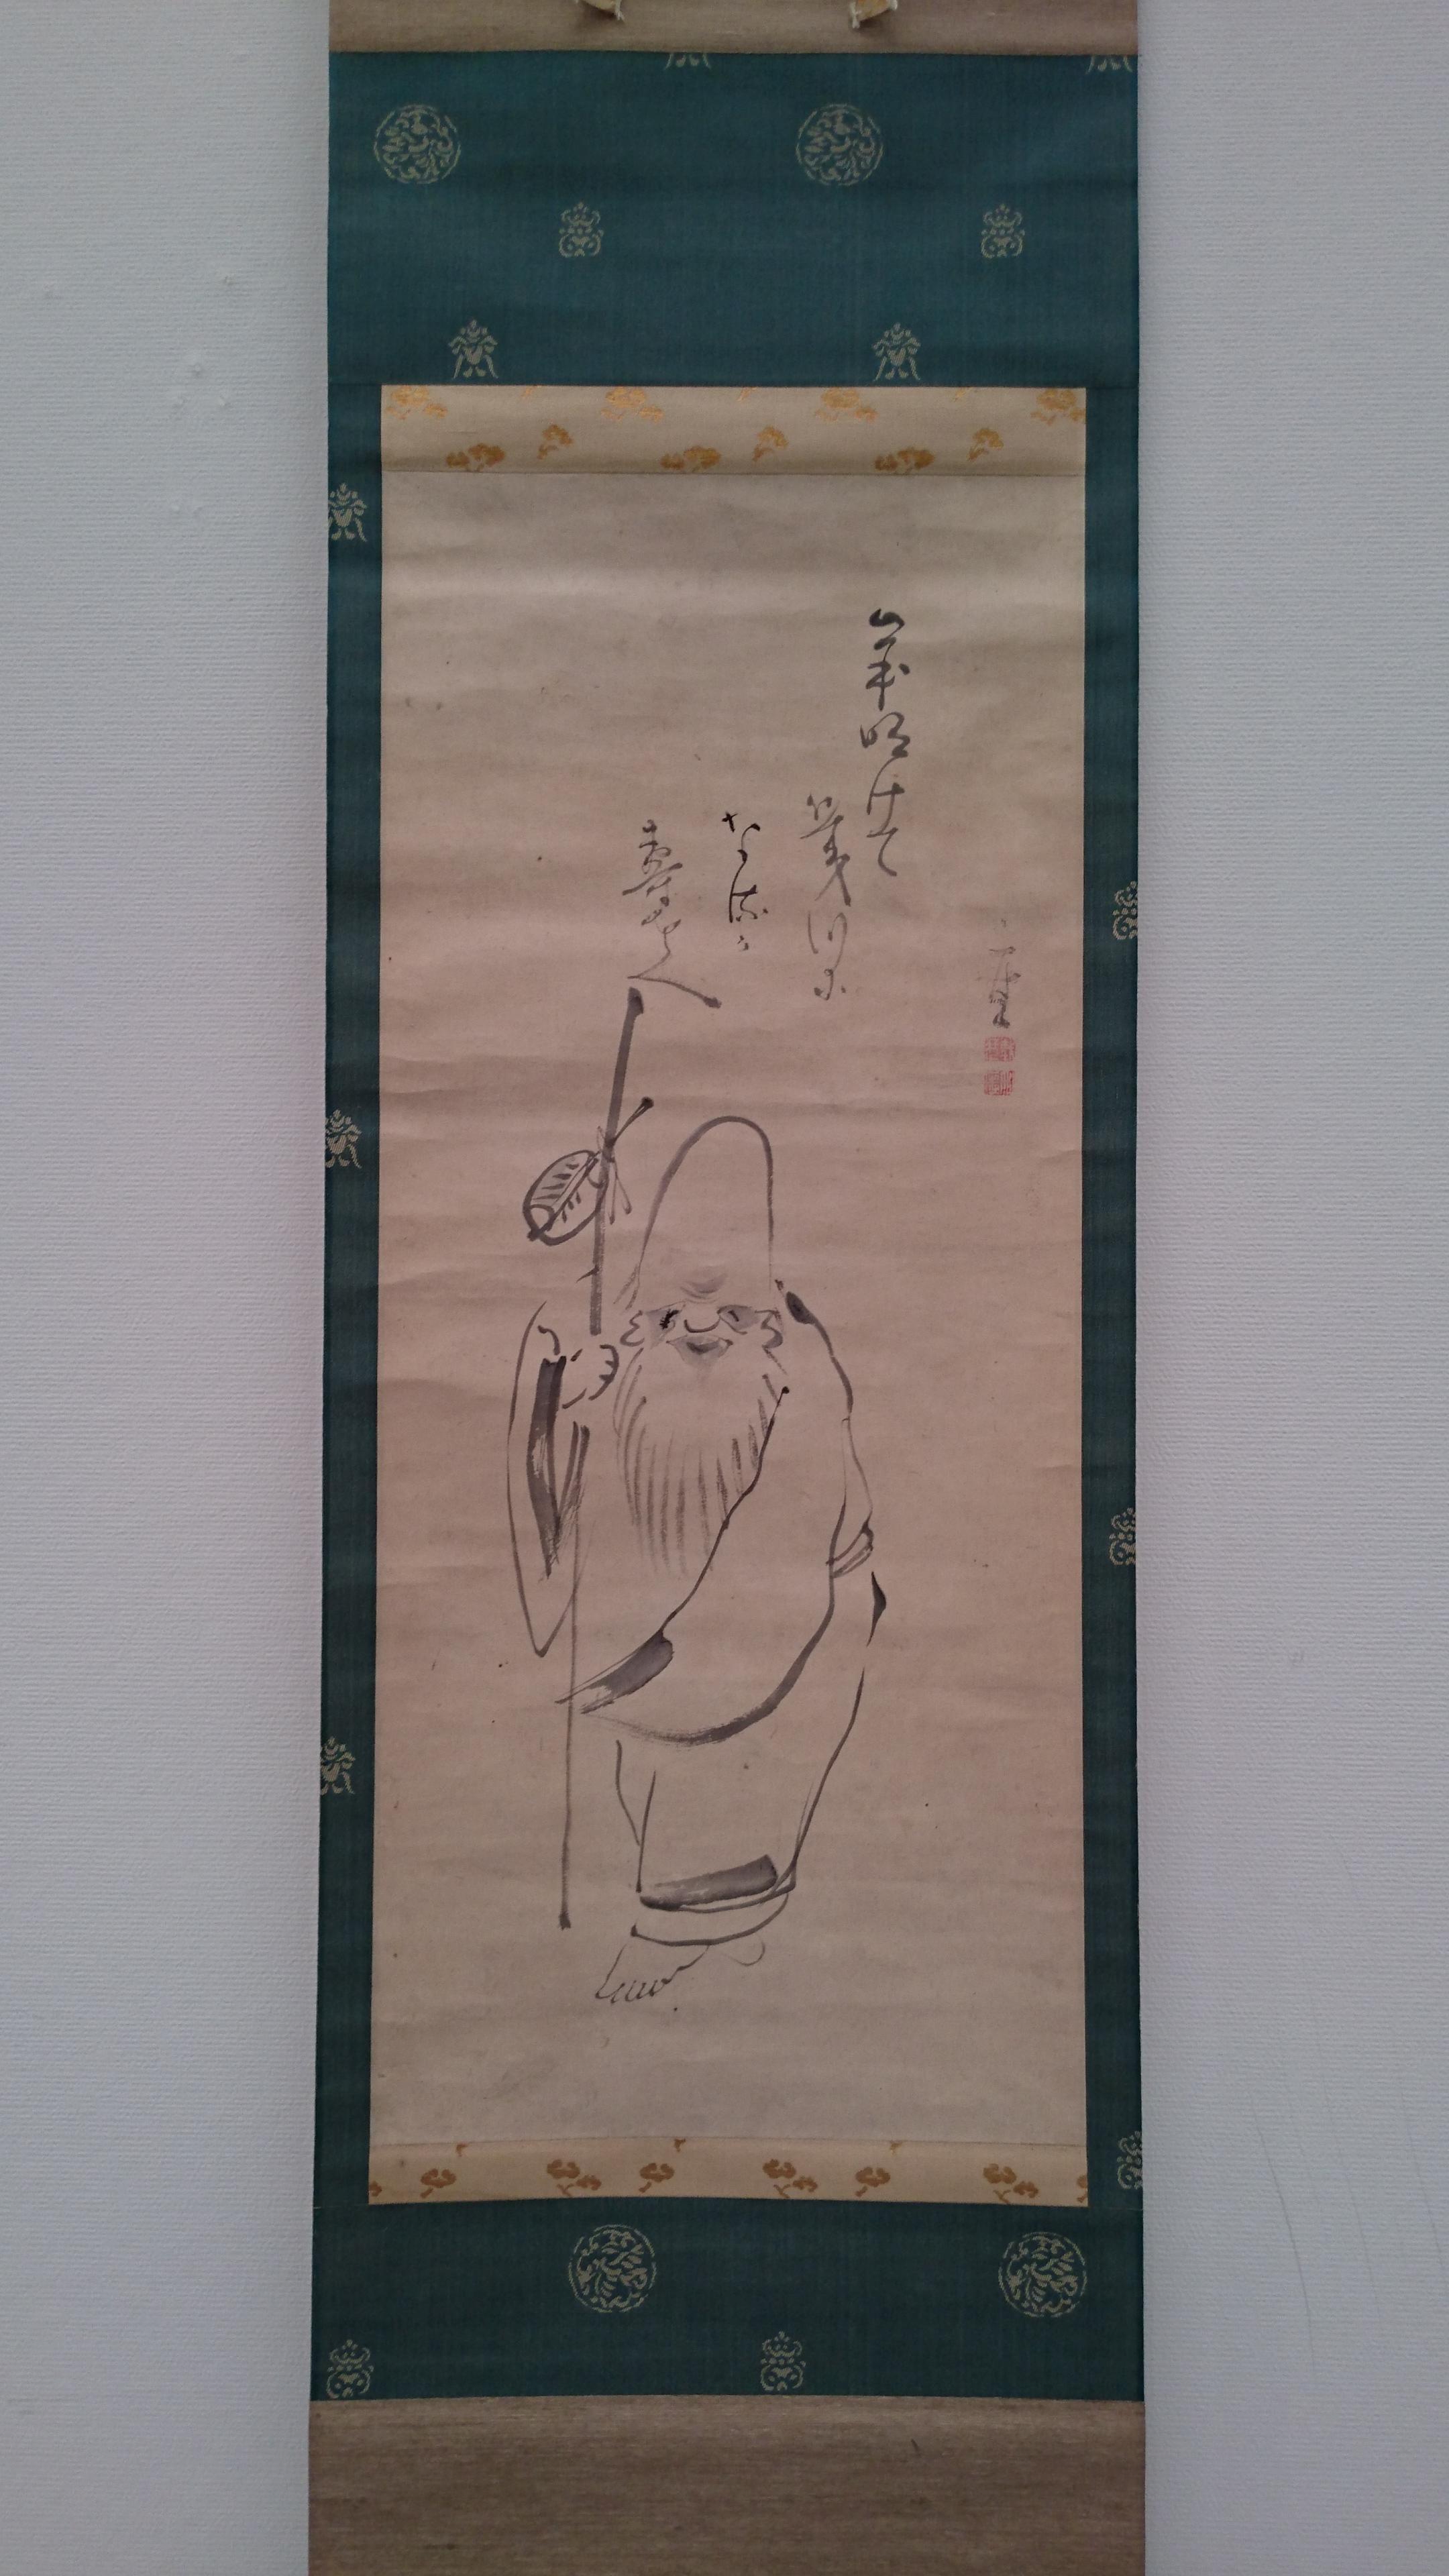 https://saga-museum.jp/museum/report/museum-diary/DSC_1703_24817_marked.jpg